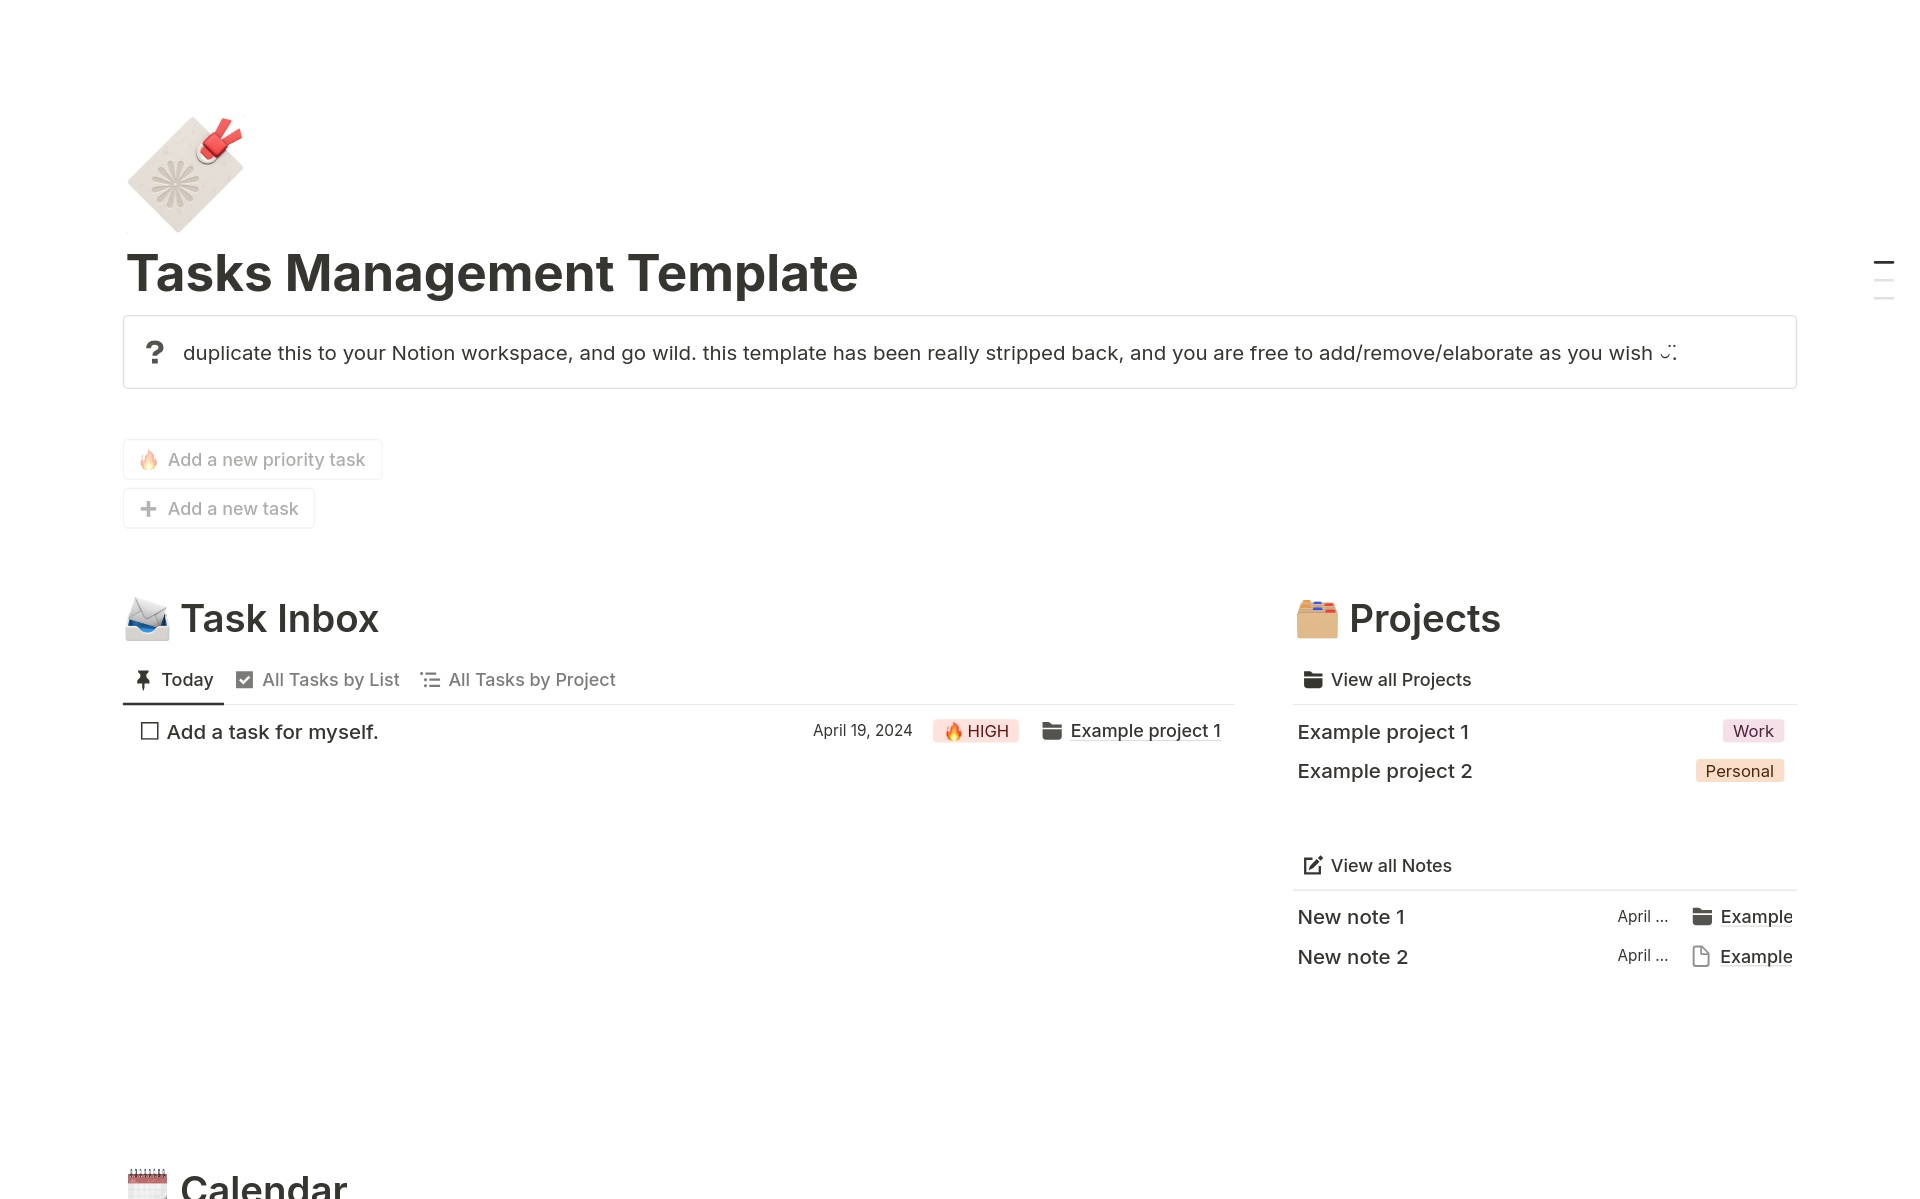 Uma prévia do modelo para Simple Tasks Management by Project